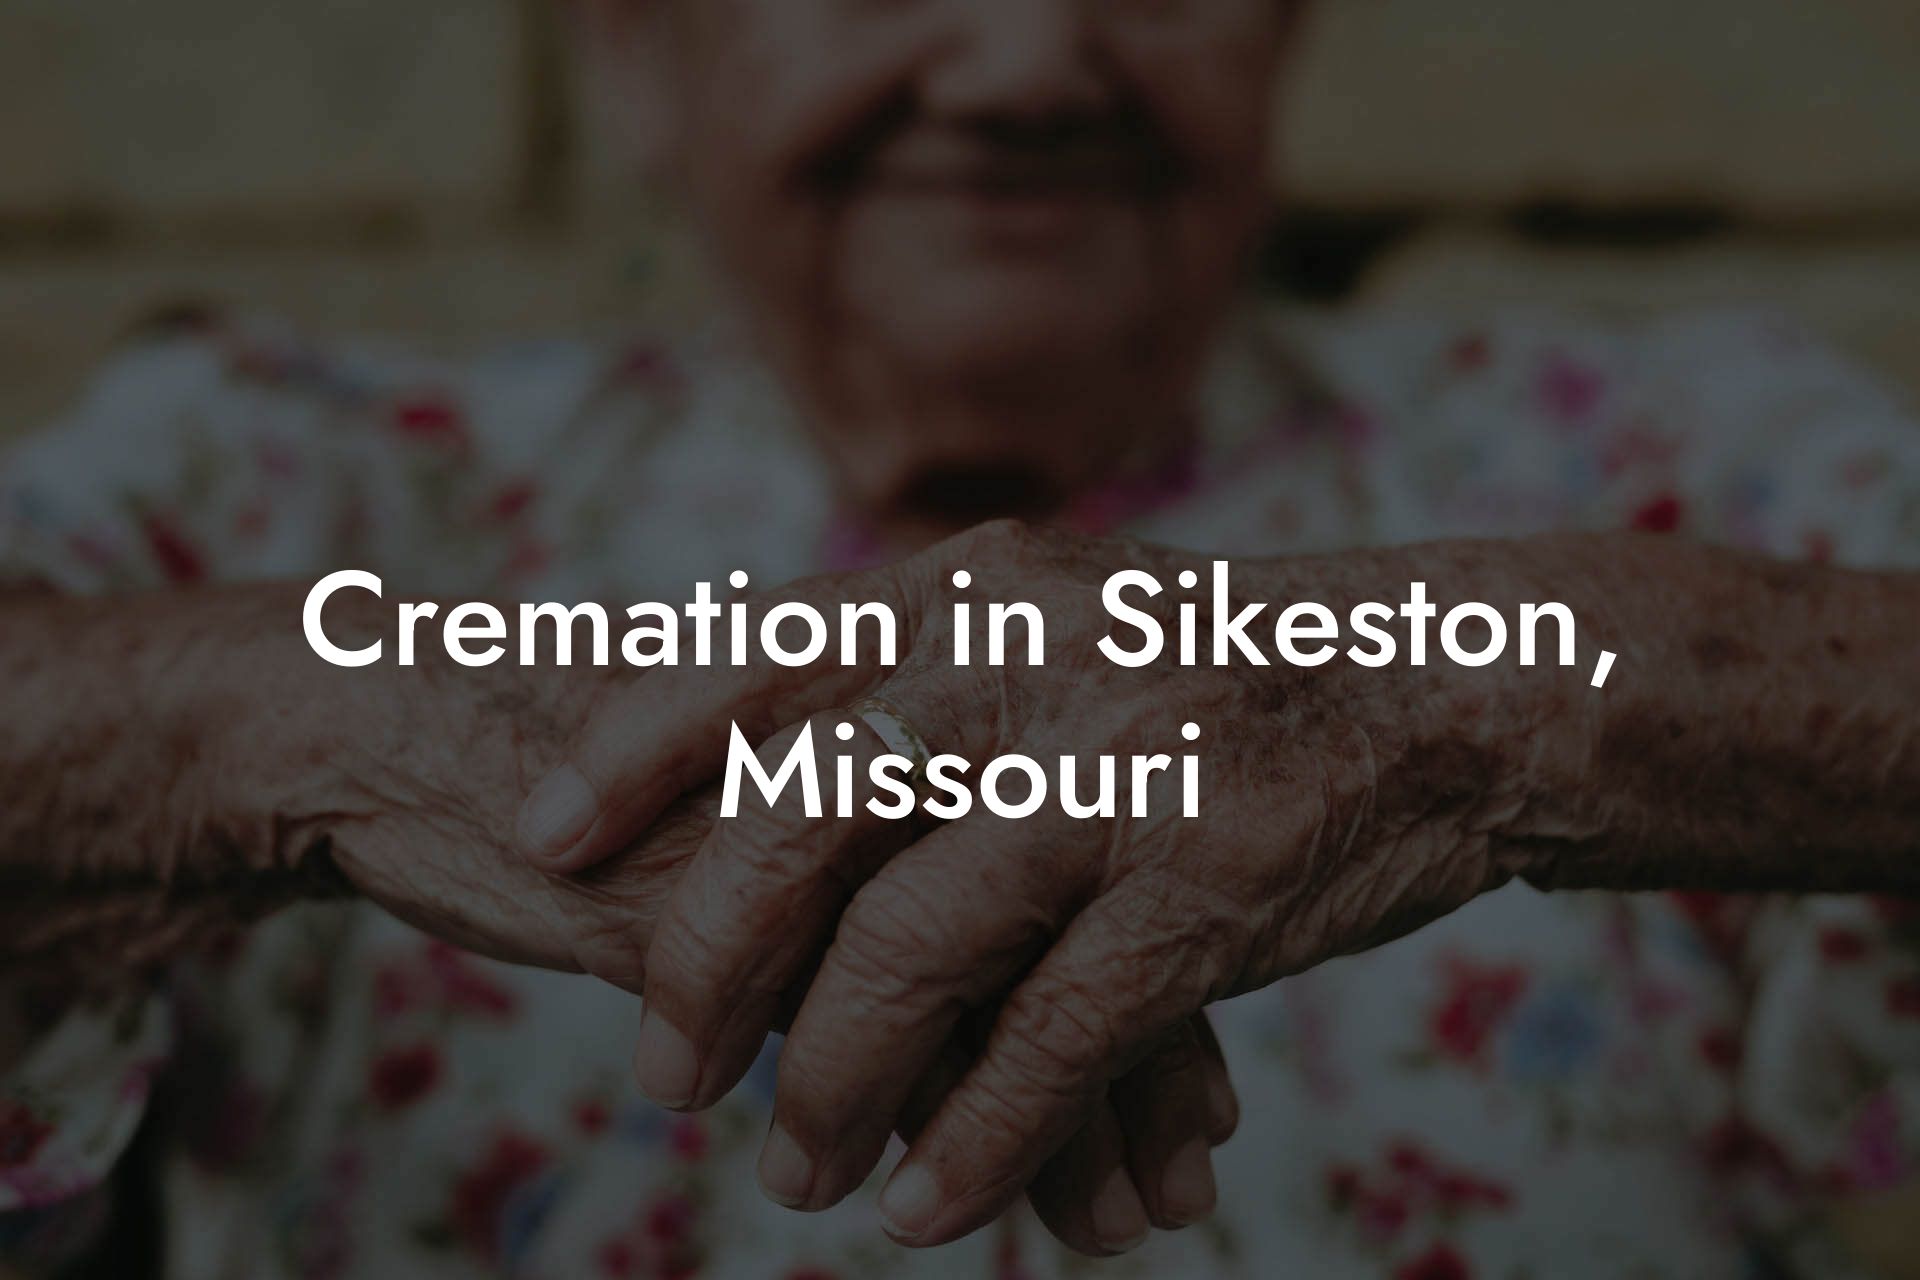 Cremation in Sikeston, Missouri